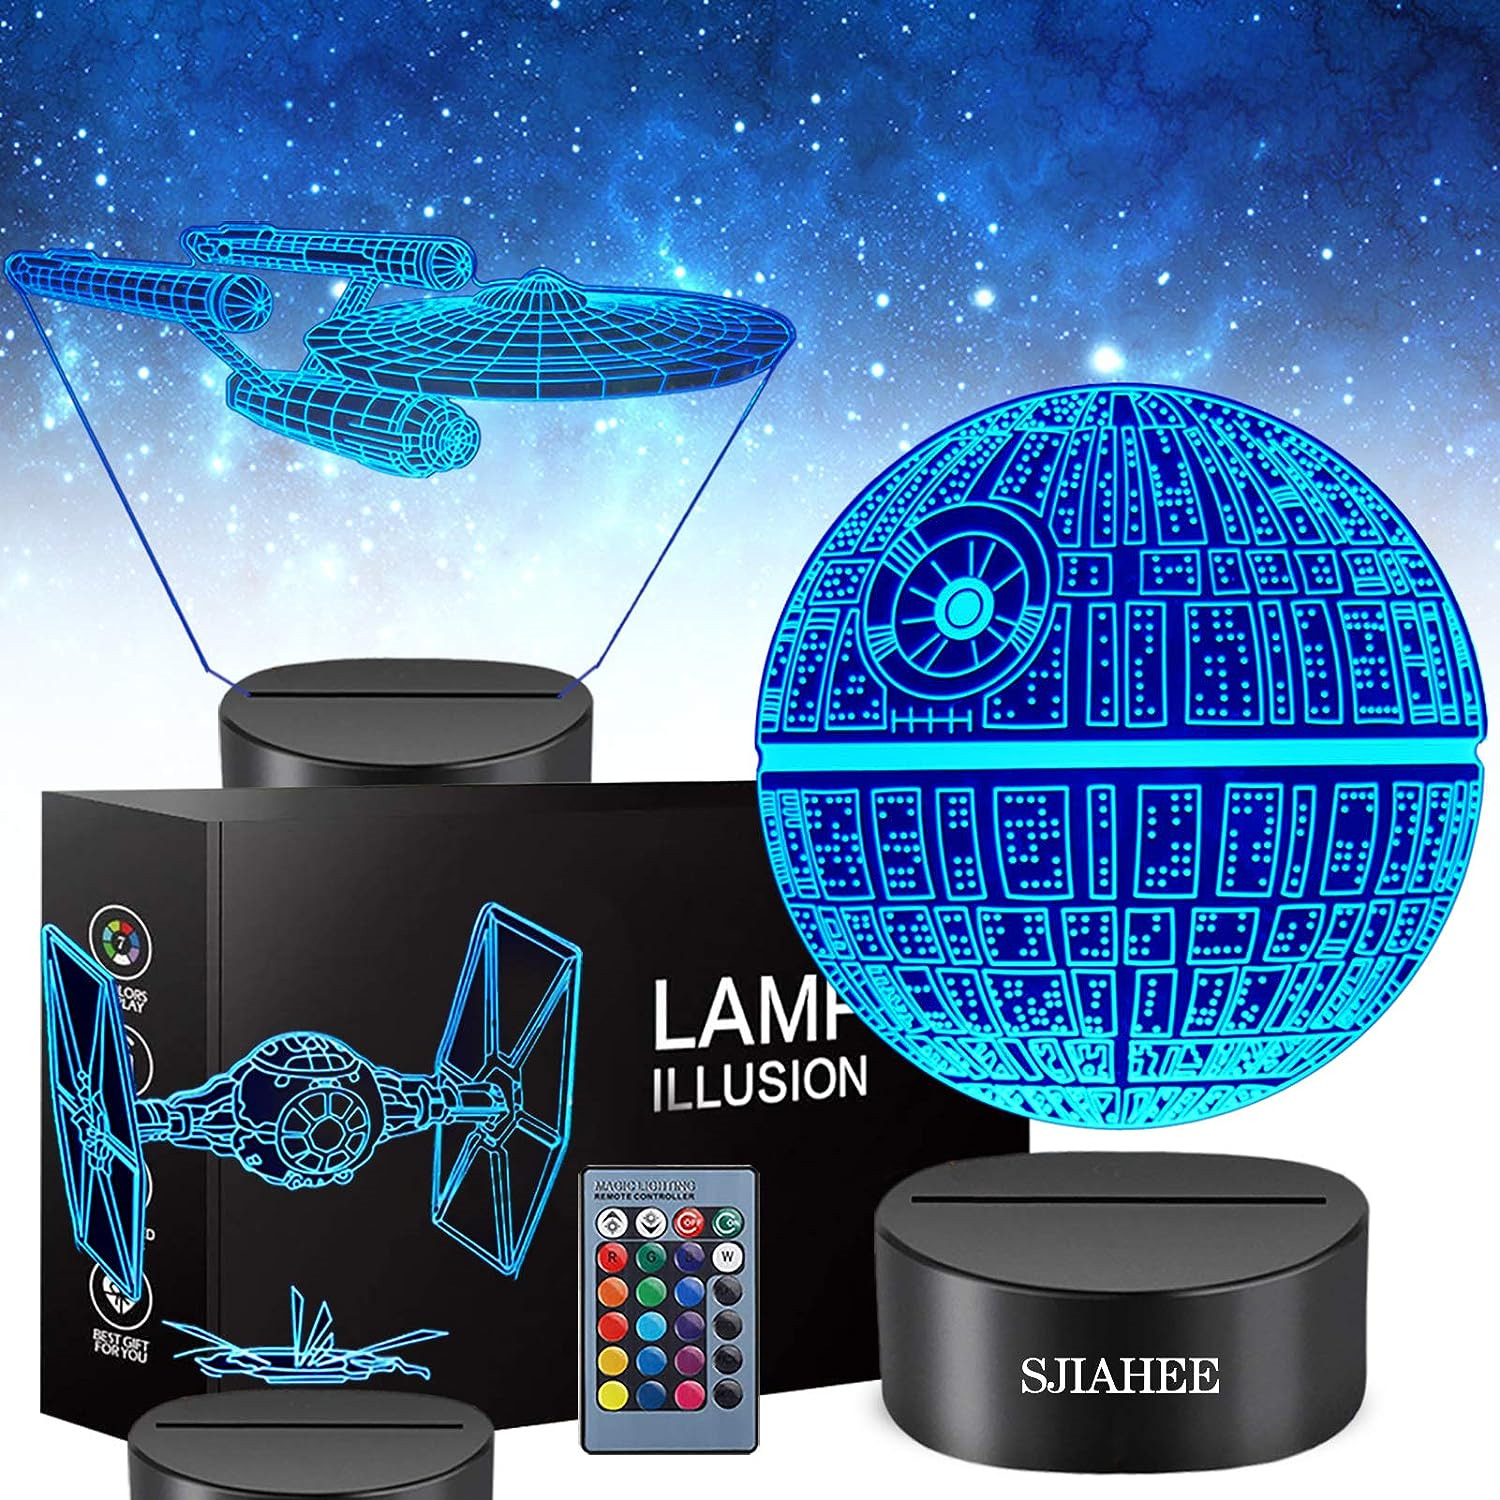 3D Star Wars Lamp - Star Wars Gifts - Star Wars Light - Star Wars Lamp& Perfe...